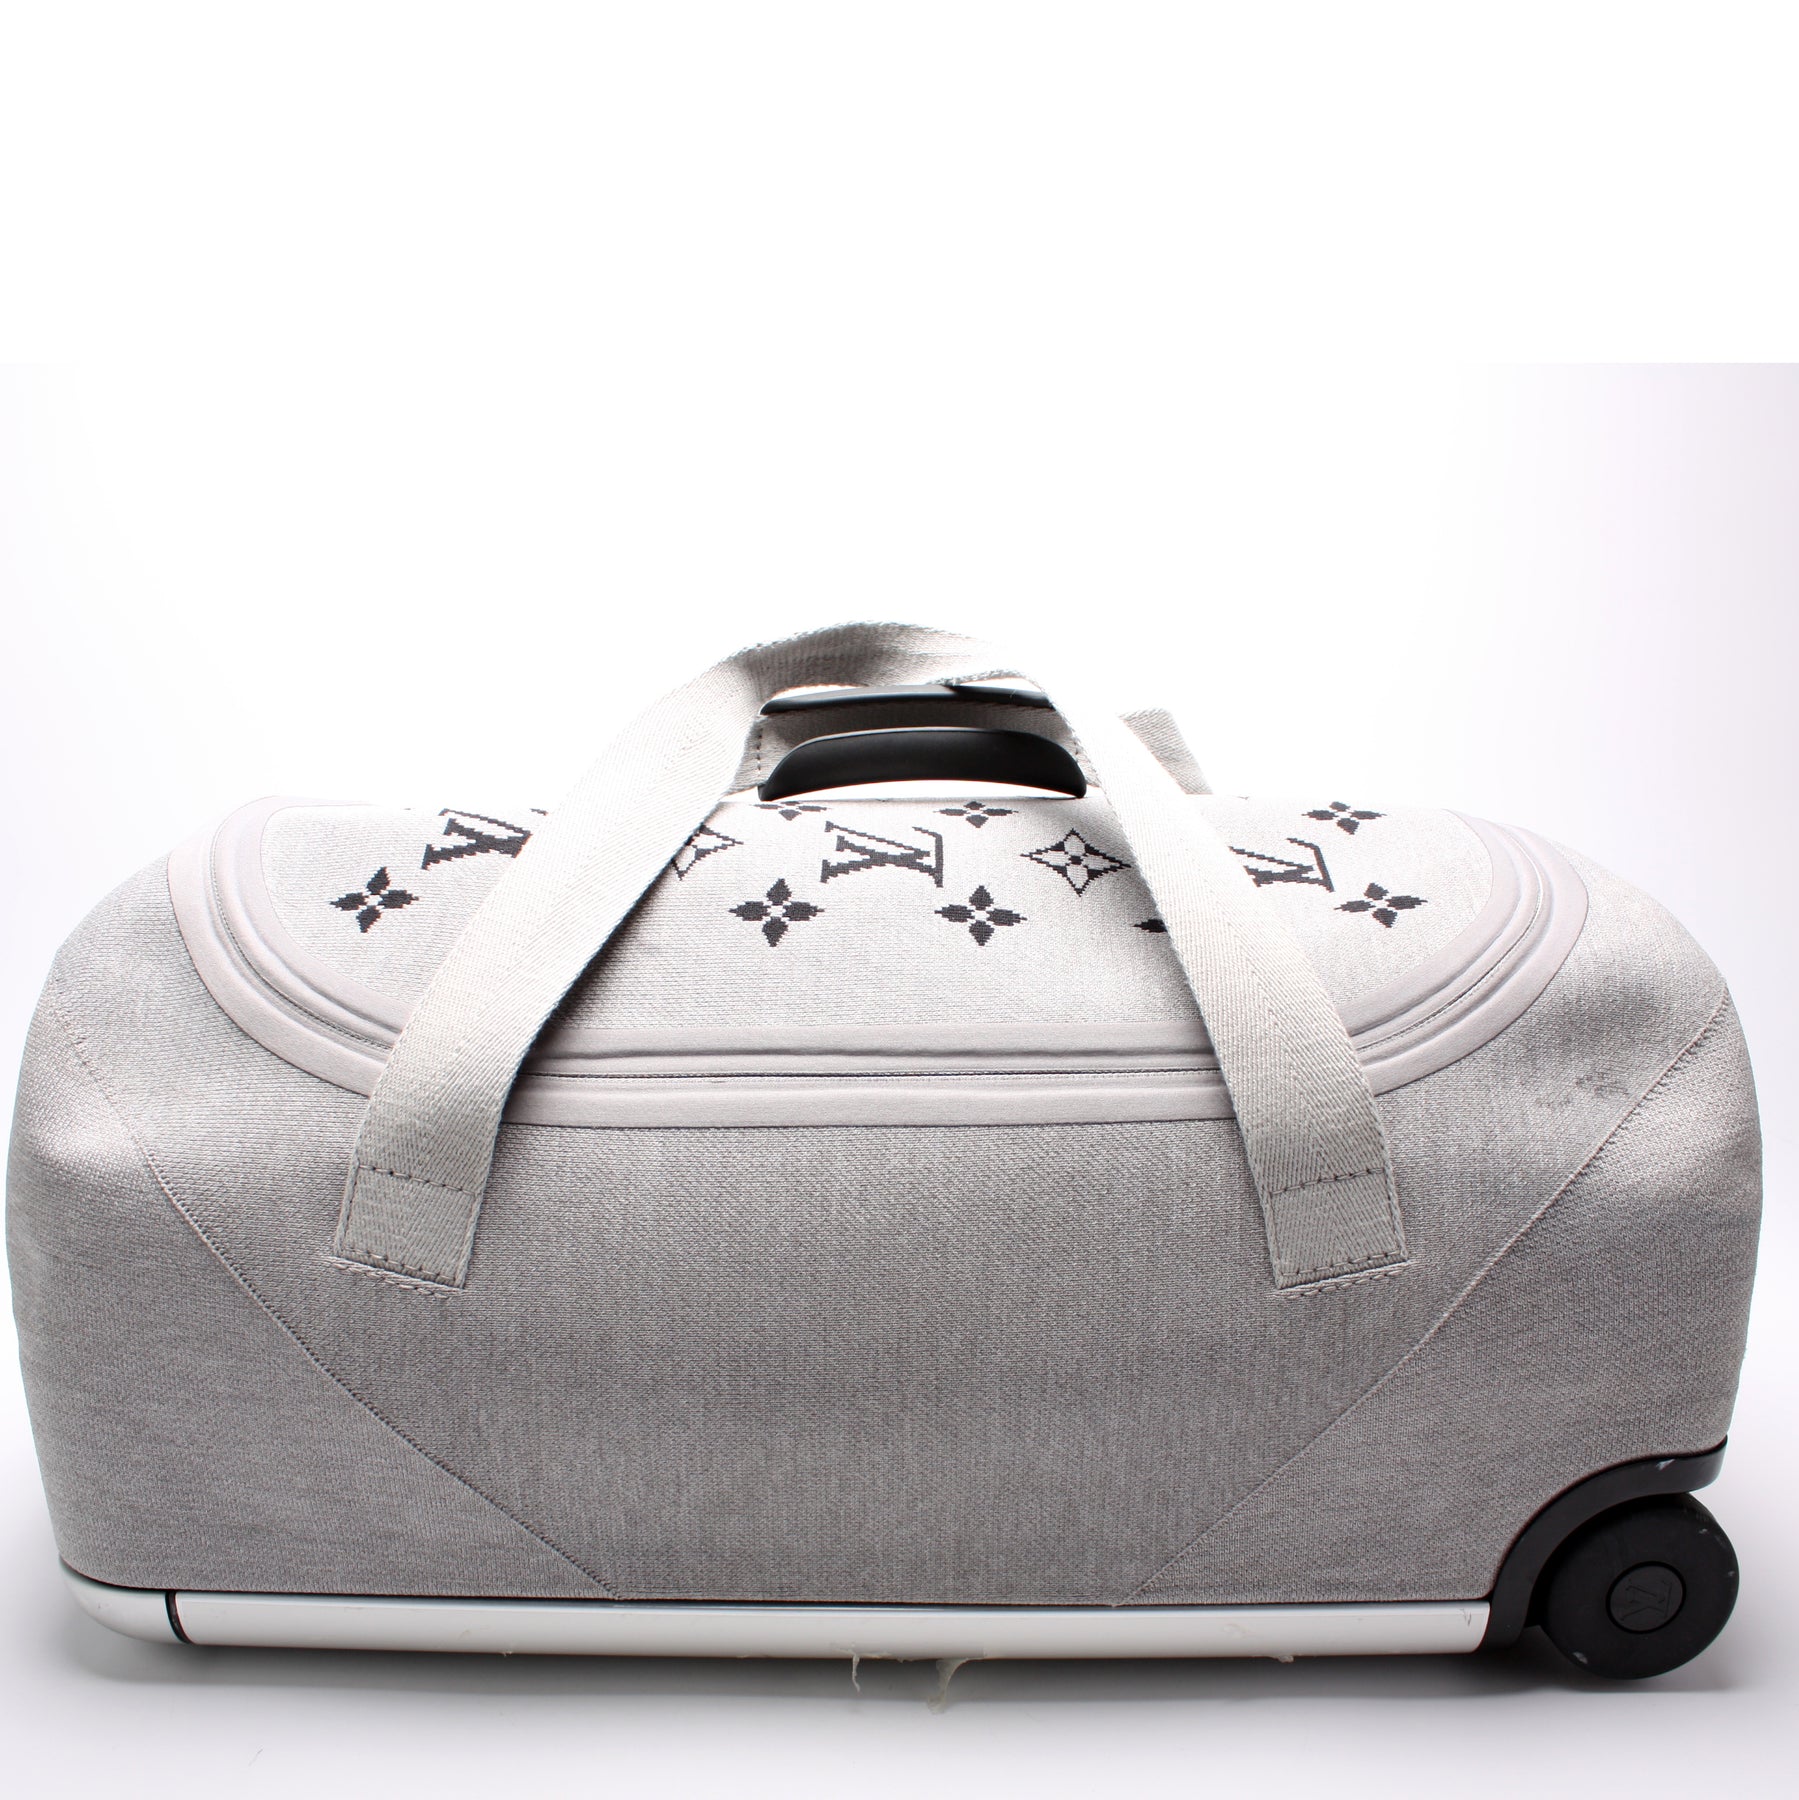 Louis Vuitton Horizon Soft Duffle 55 - beautiful but pricey